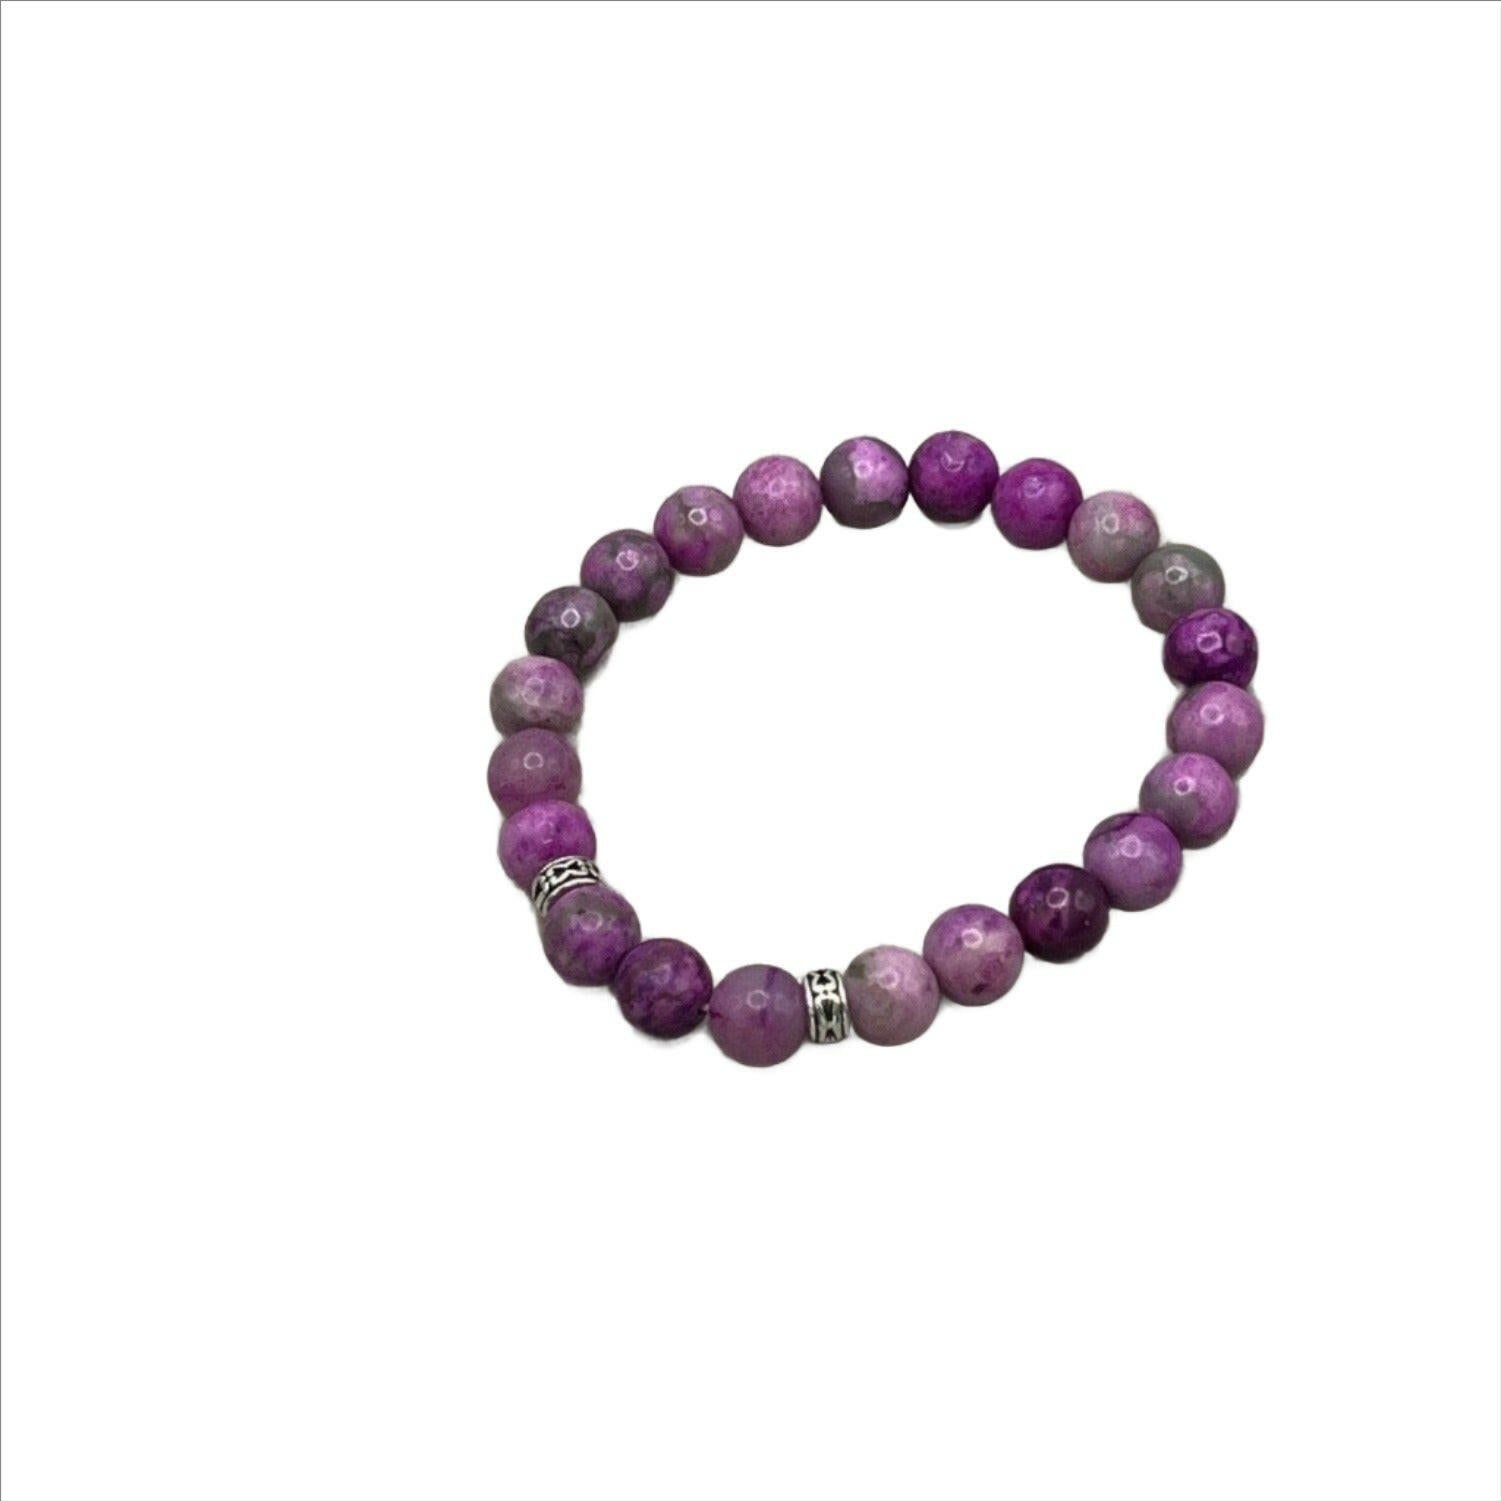 Bec Sue Jewelry Shop chakra bracelet 6.5 / purple / 8mm sugilite beads Sugilite Jewelry, Bohemian Bracelet, Healing Bracelet Tags 515